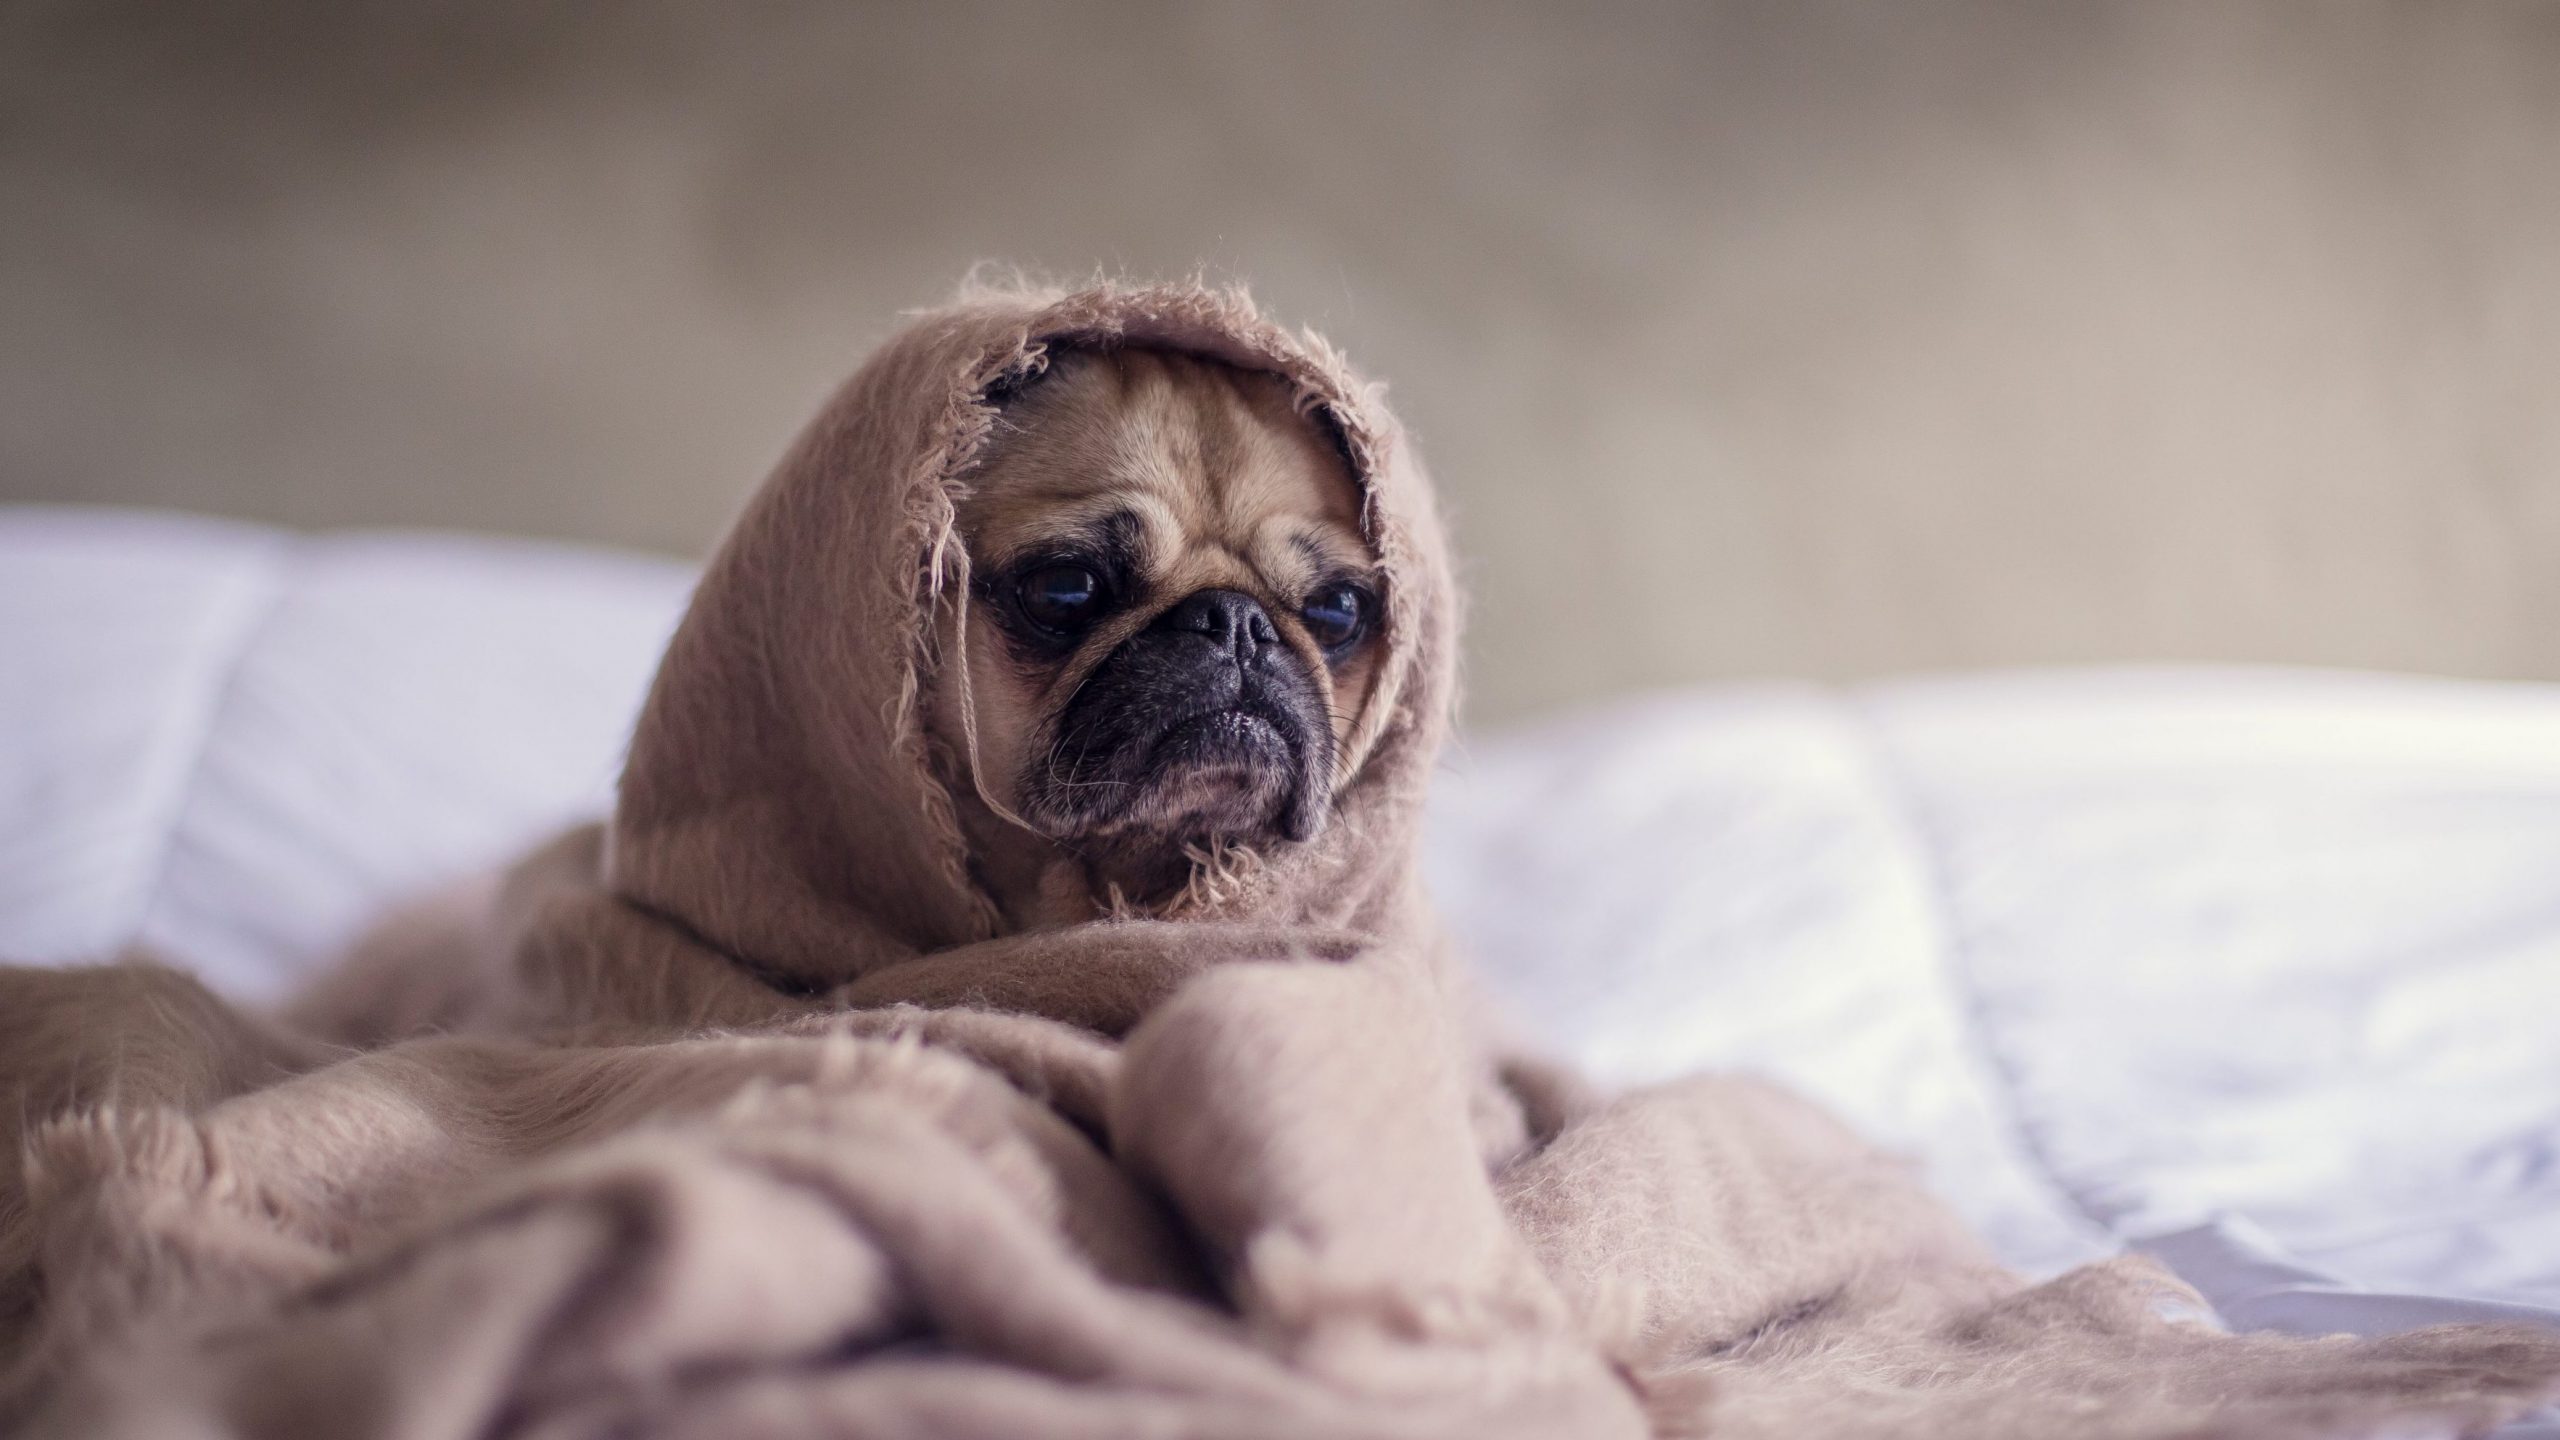 Sad pug in blanket